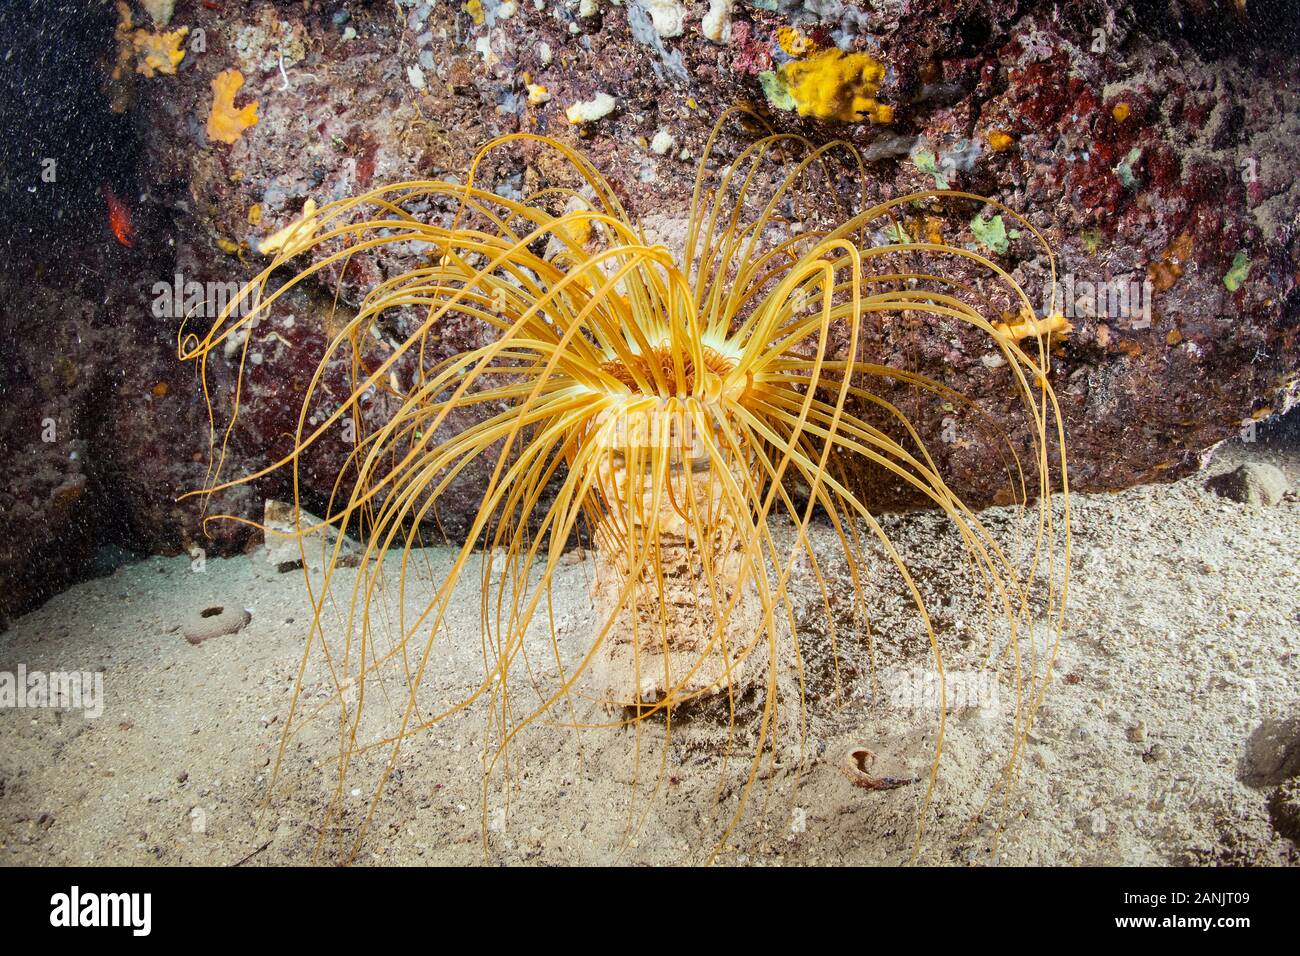 cylinder anemone or coloured tube anemone, Cerianthus membranaceus, Dubrovnik, Croatia, Adriatic Sea, Mediterranean Sea, Atlantic Ocean Stock Photo